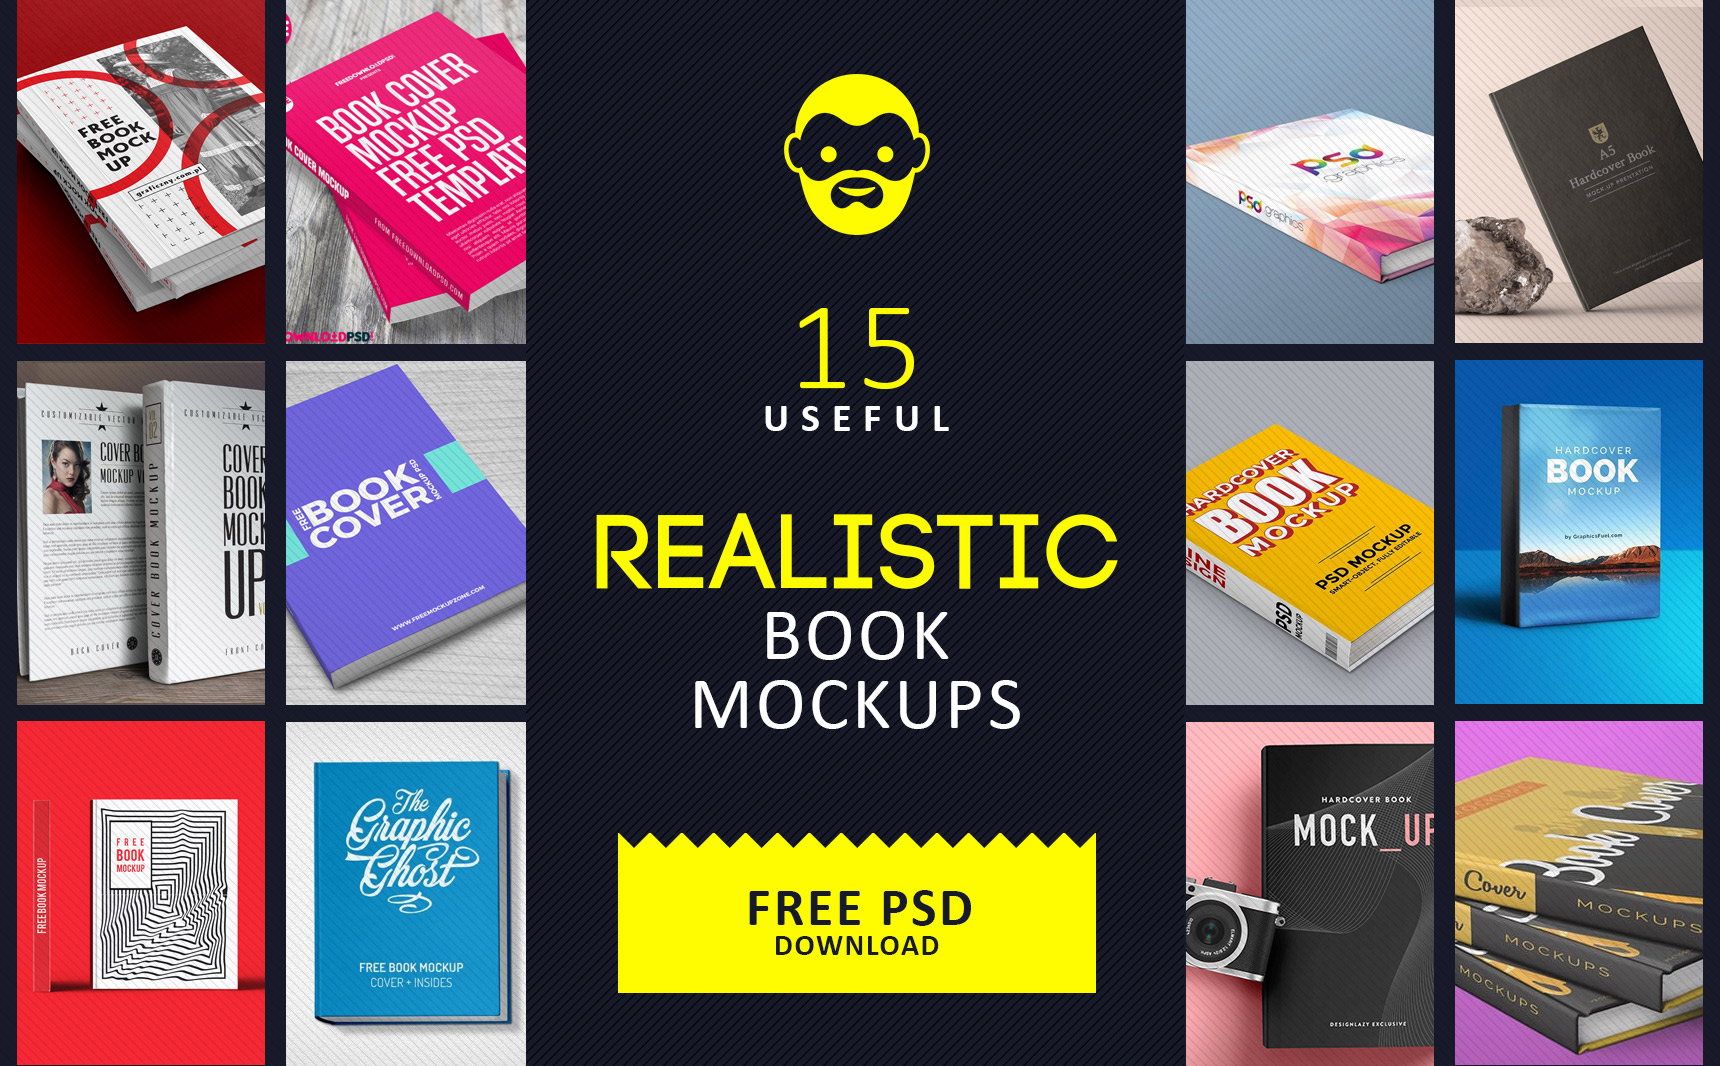 Download Free Ebook Cover Creator/ Book Mockup Generator - Free Download Mockup